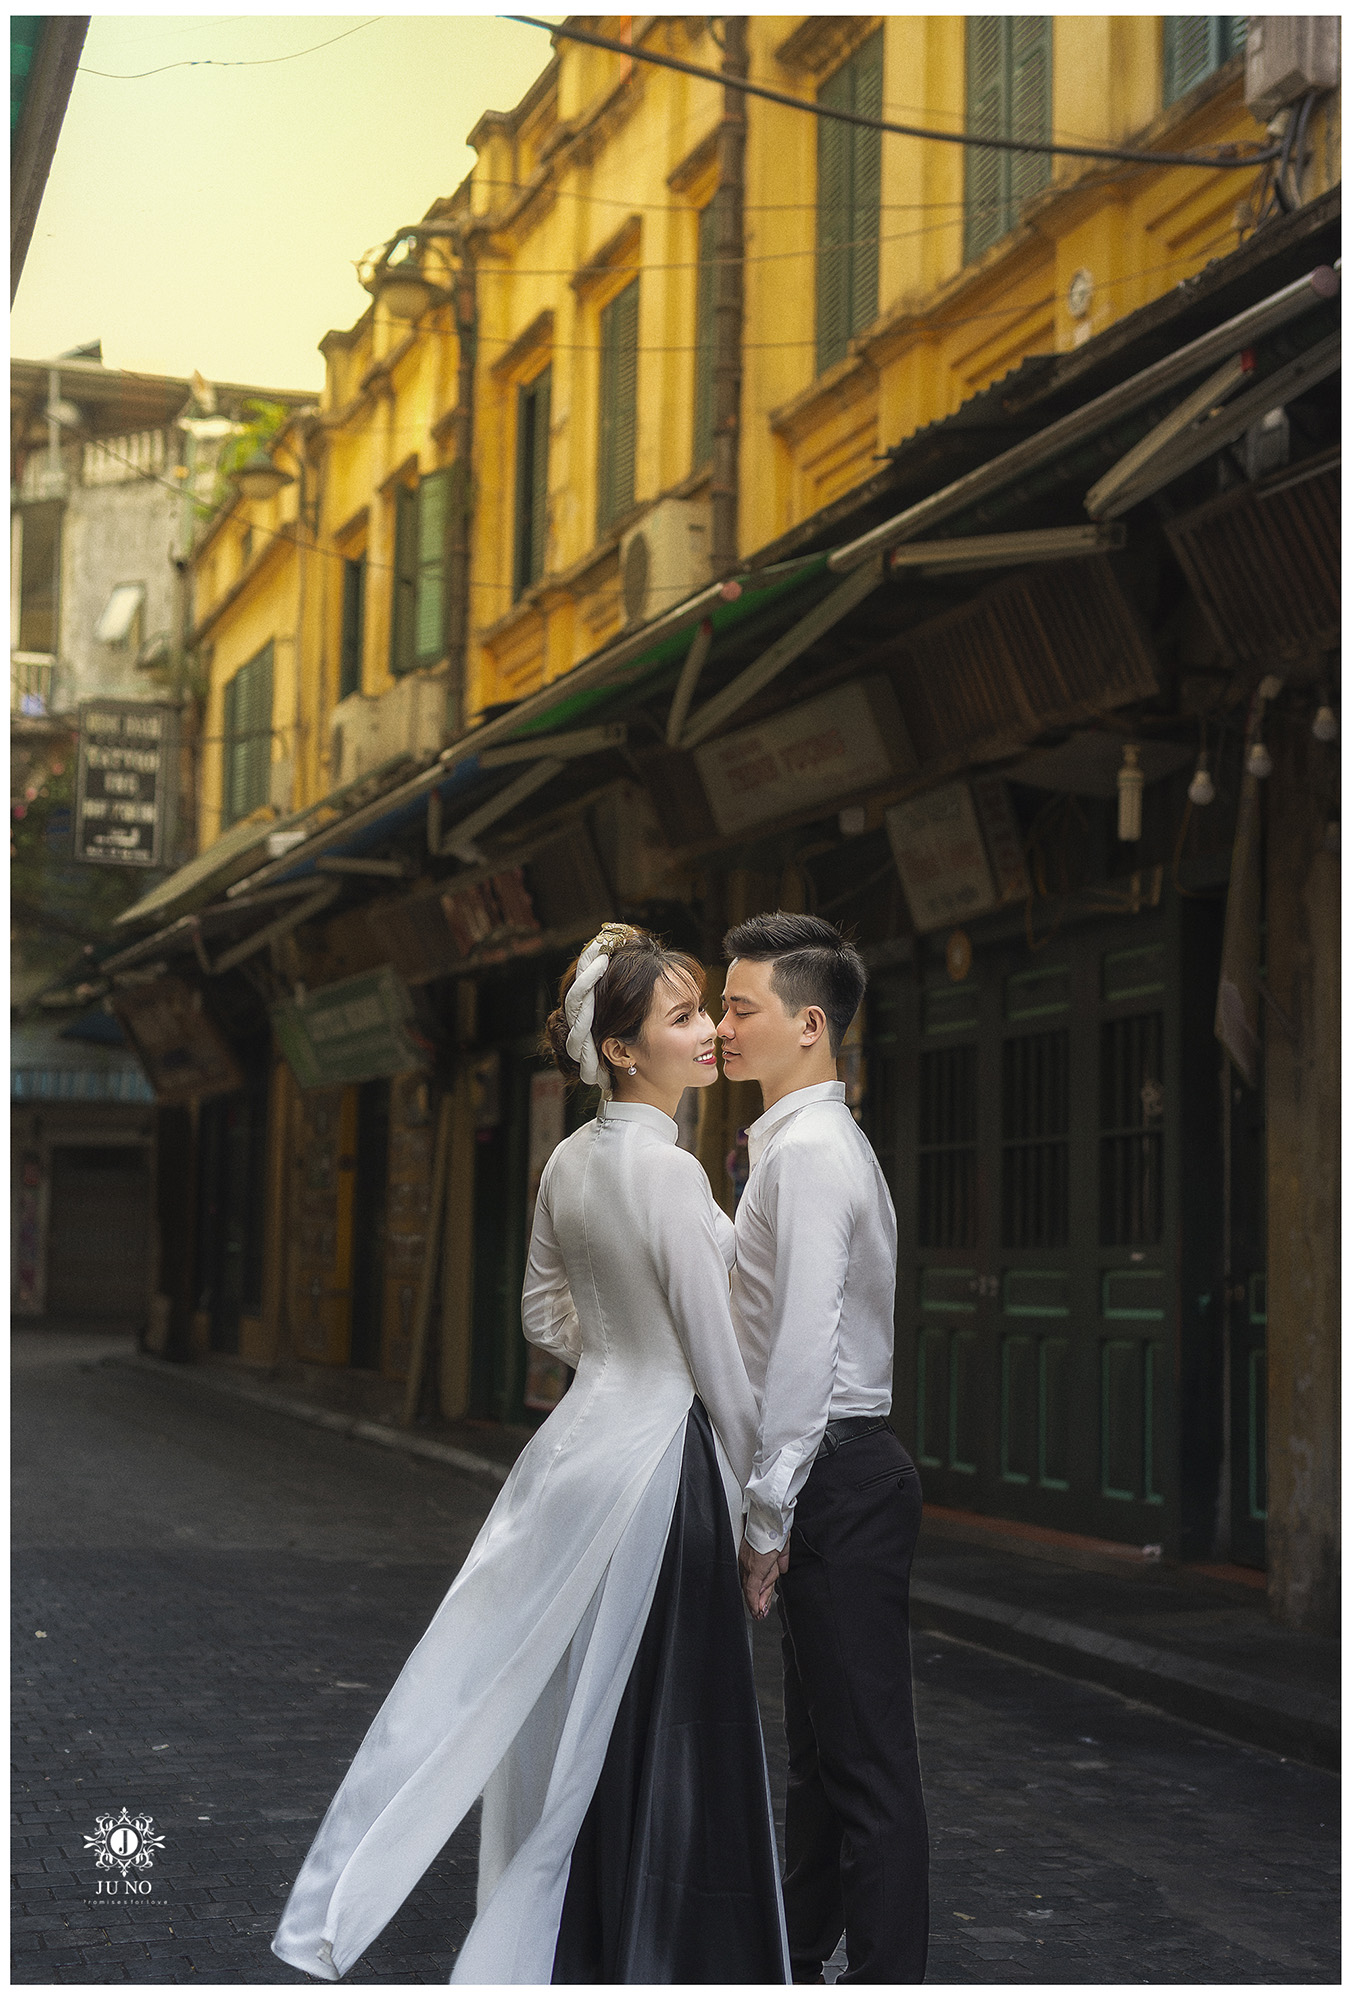 Những khoảnh khắc lãng mạn tươi đẹp của đôi uyên ương đã ghi lại trong ảnh cưới phố cổ Hà Nội sẽ khiến bạn đắm chìm trong không gian lãng mạn của thành phố ngàn năm văn hiến này.